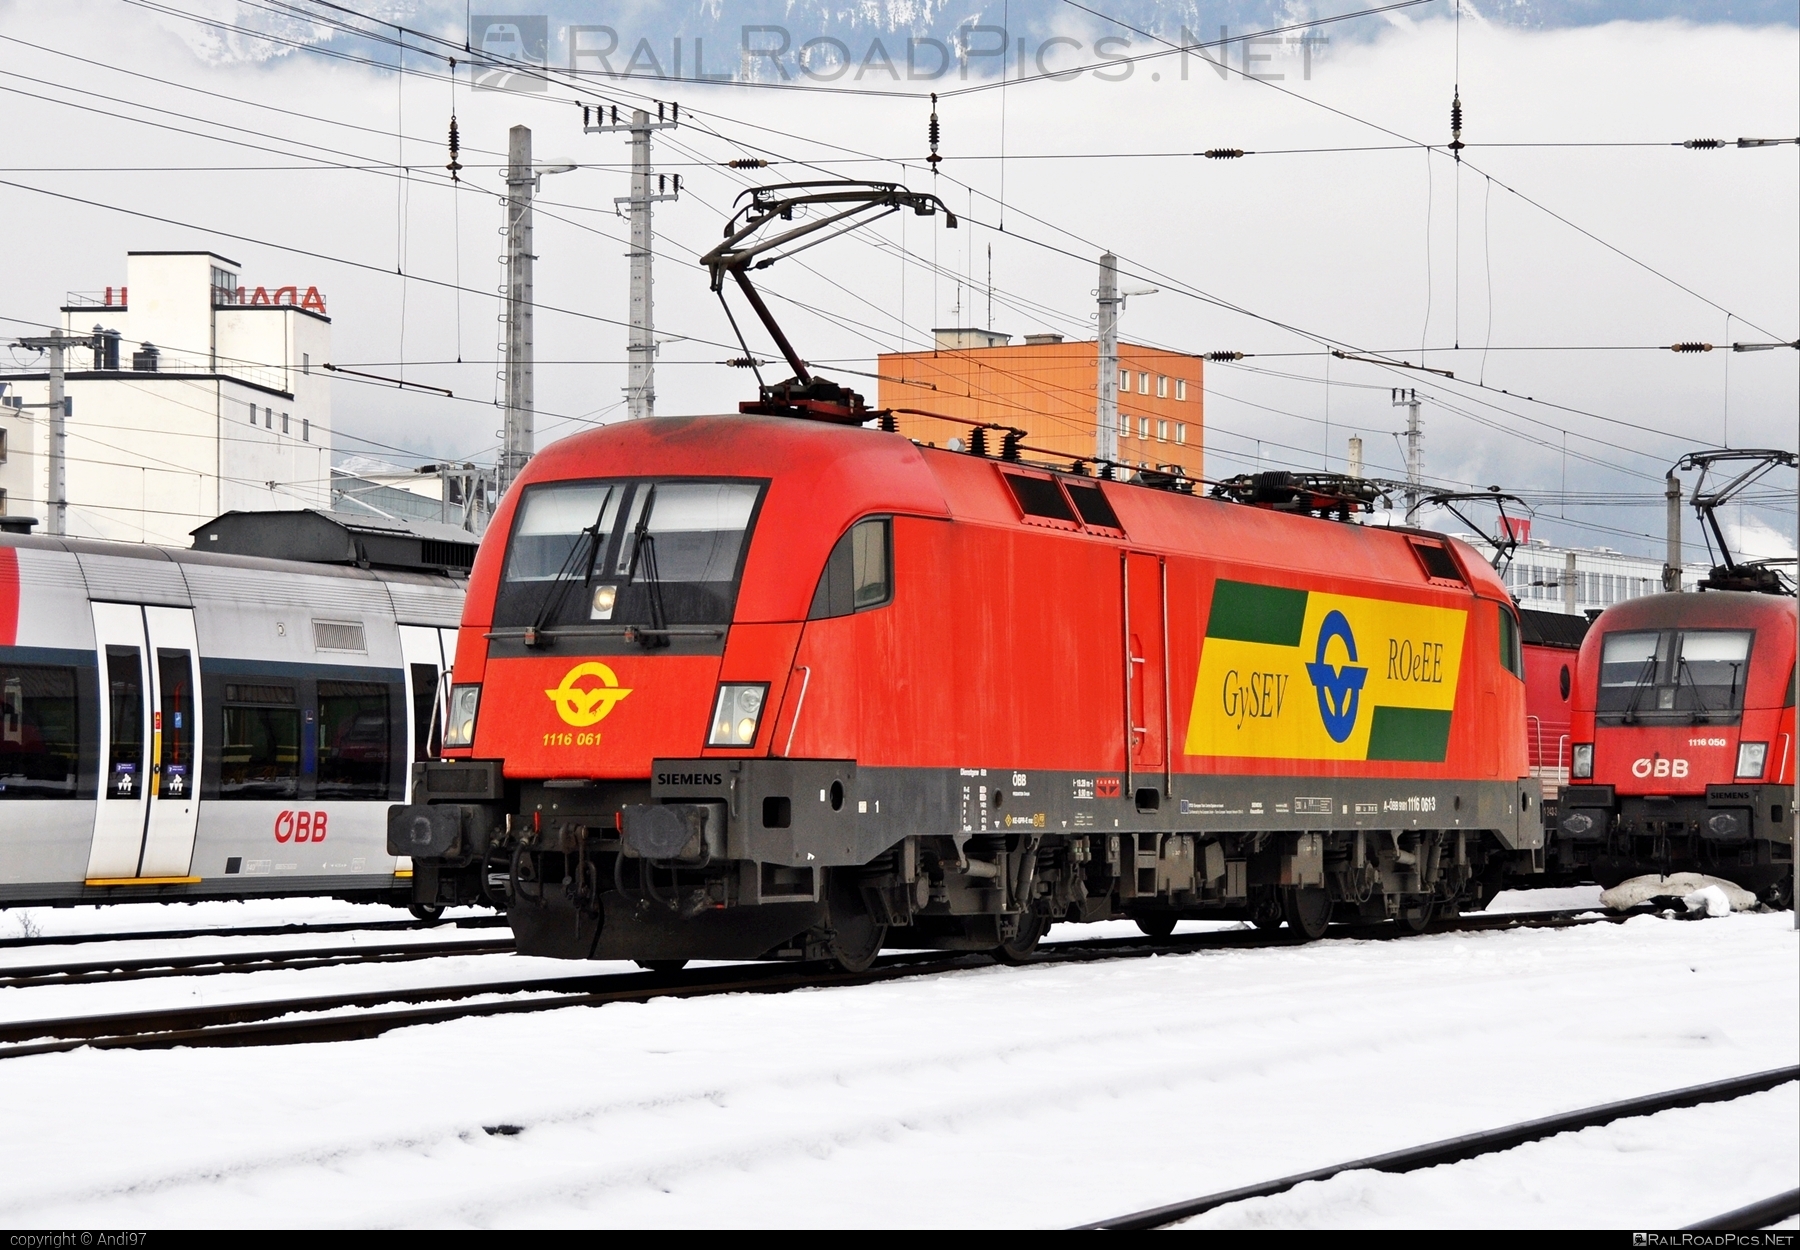 Siemens ES 64 U2 - 1116 061 operated by GYSEV - Györ-Sopron-Ebenfurti Vasut Részvénytarsasag #es64 #es64u2 #eurosprinter #gyorsopronebenfurtivasutreszvenytarsasag #gysev #obb #osterreichischebundesbahnen #siemens #siemensEs64 #siemensEs64u2 #siemenstaurus #taurus #tauruslocomotive